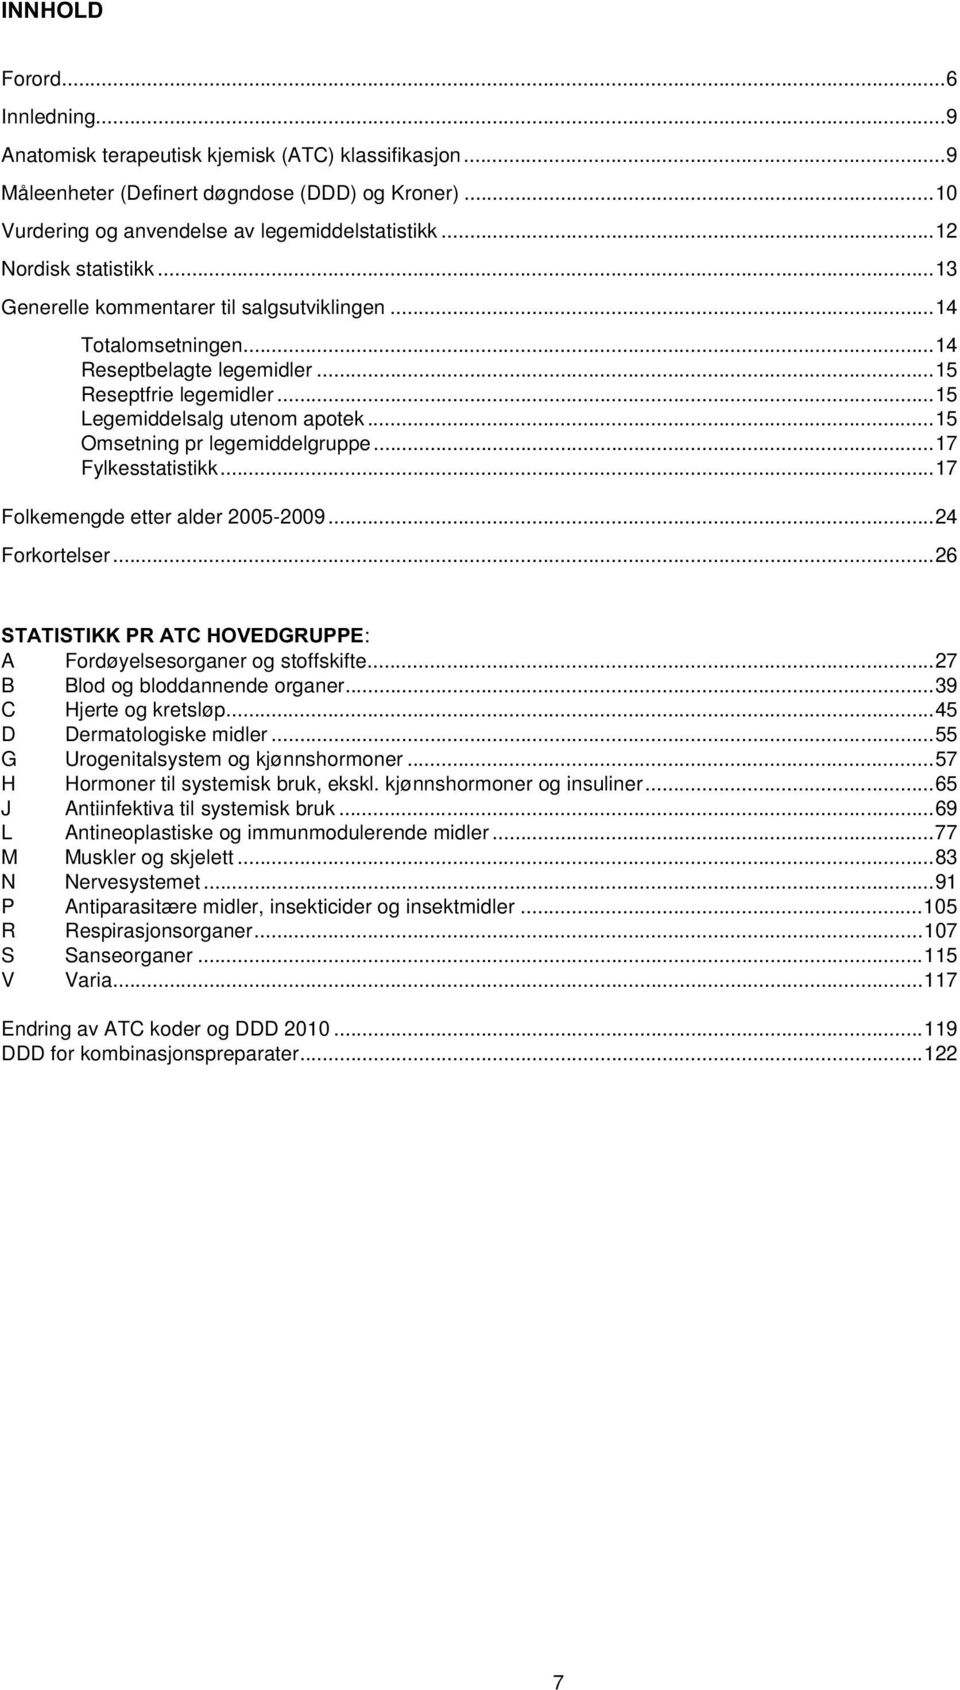 ..15 Omsetning pr legemiddelgruppe...17 Fylkesstatistikk...17 Folkemengde etter alder 2005-2009...24 Forkortelser...26 STATISTIKK PR ATC HOVEDGRUPPE: A Fordøyelsesorganer og stoffskifte.